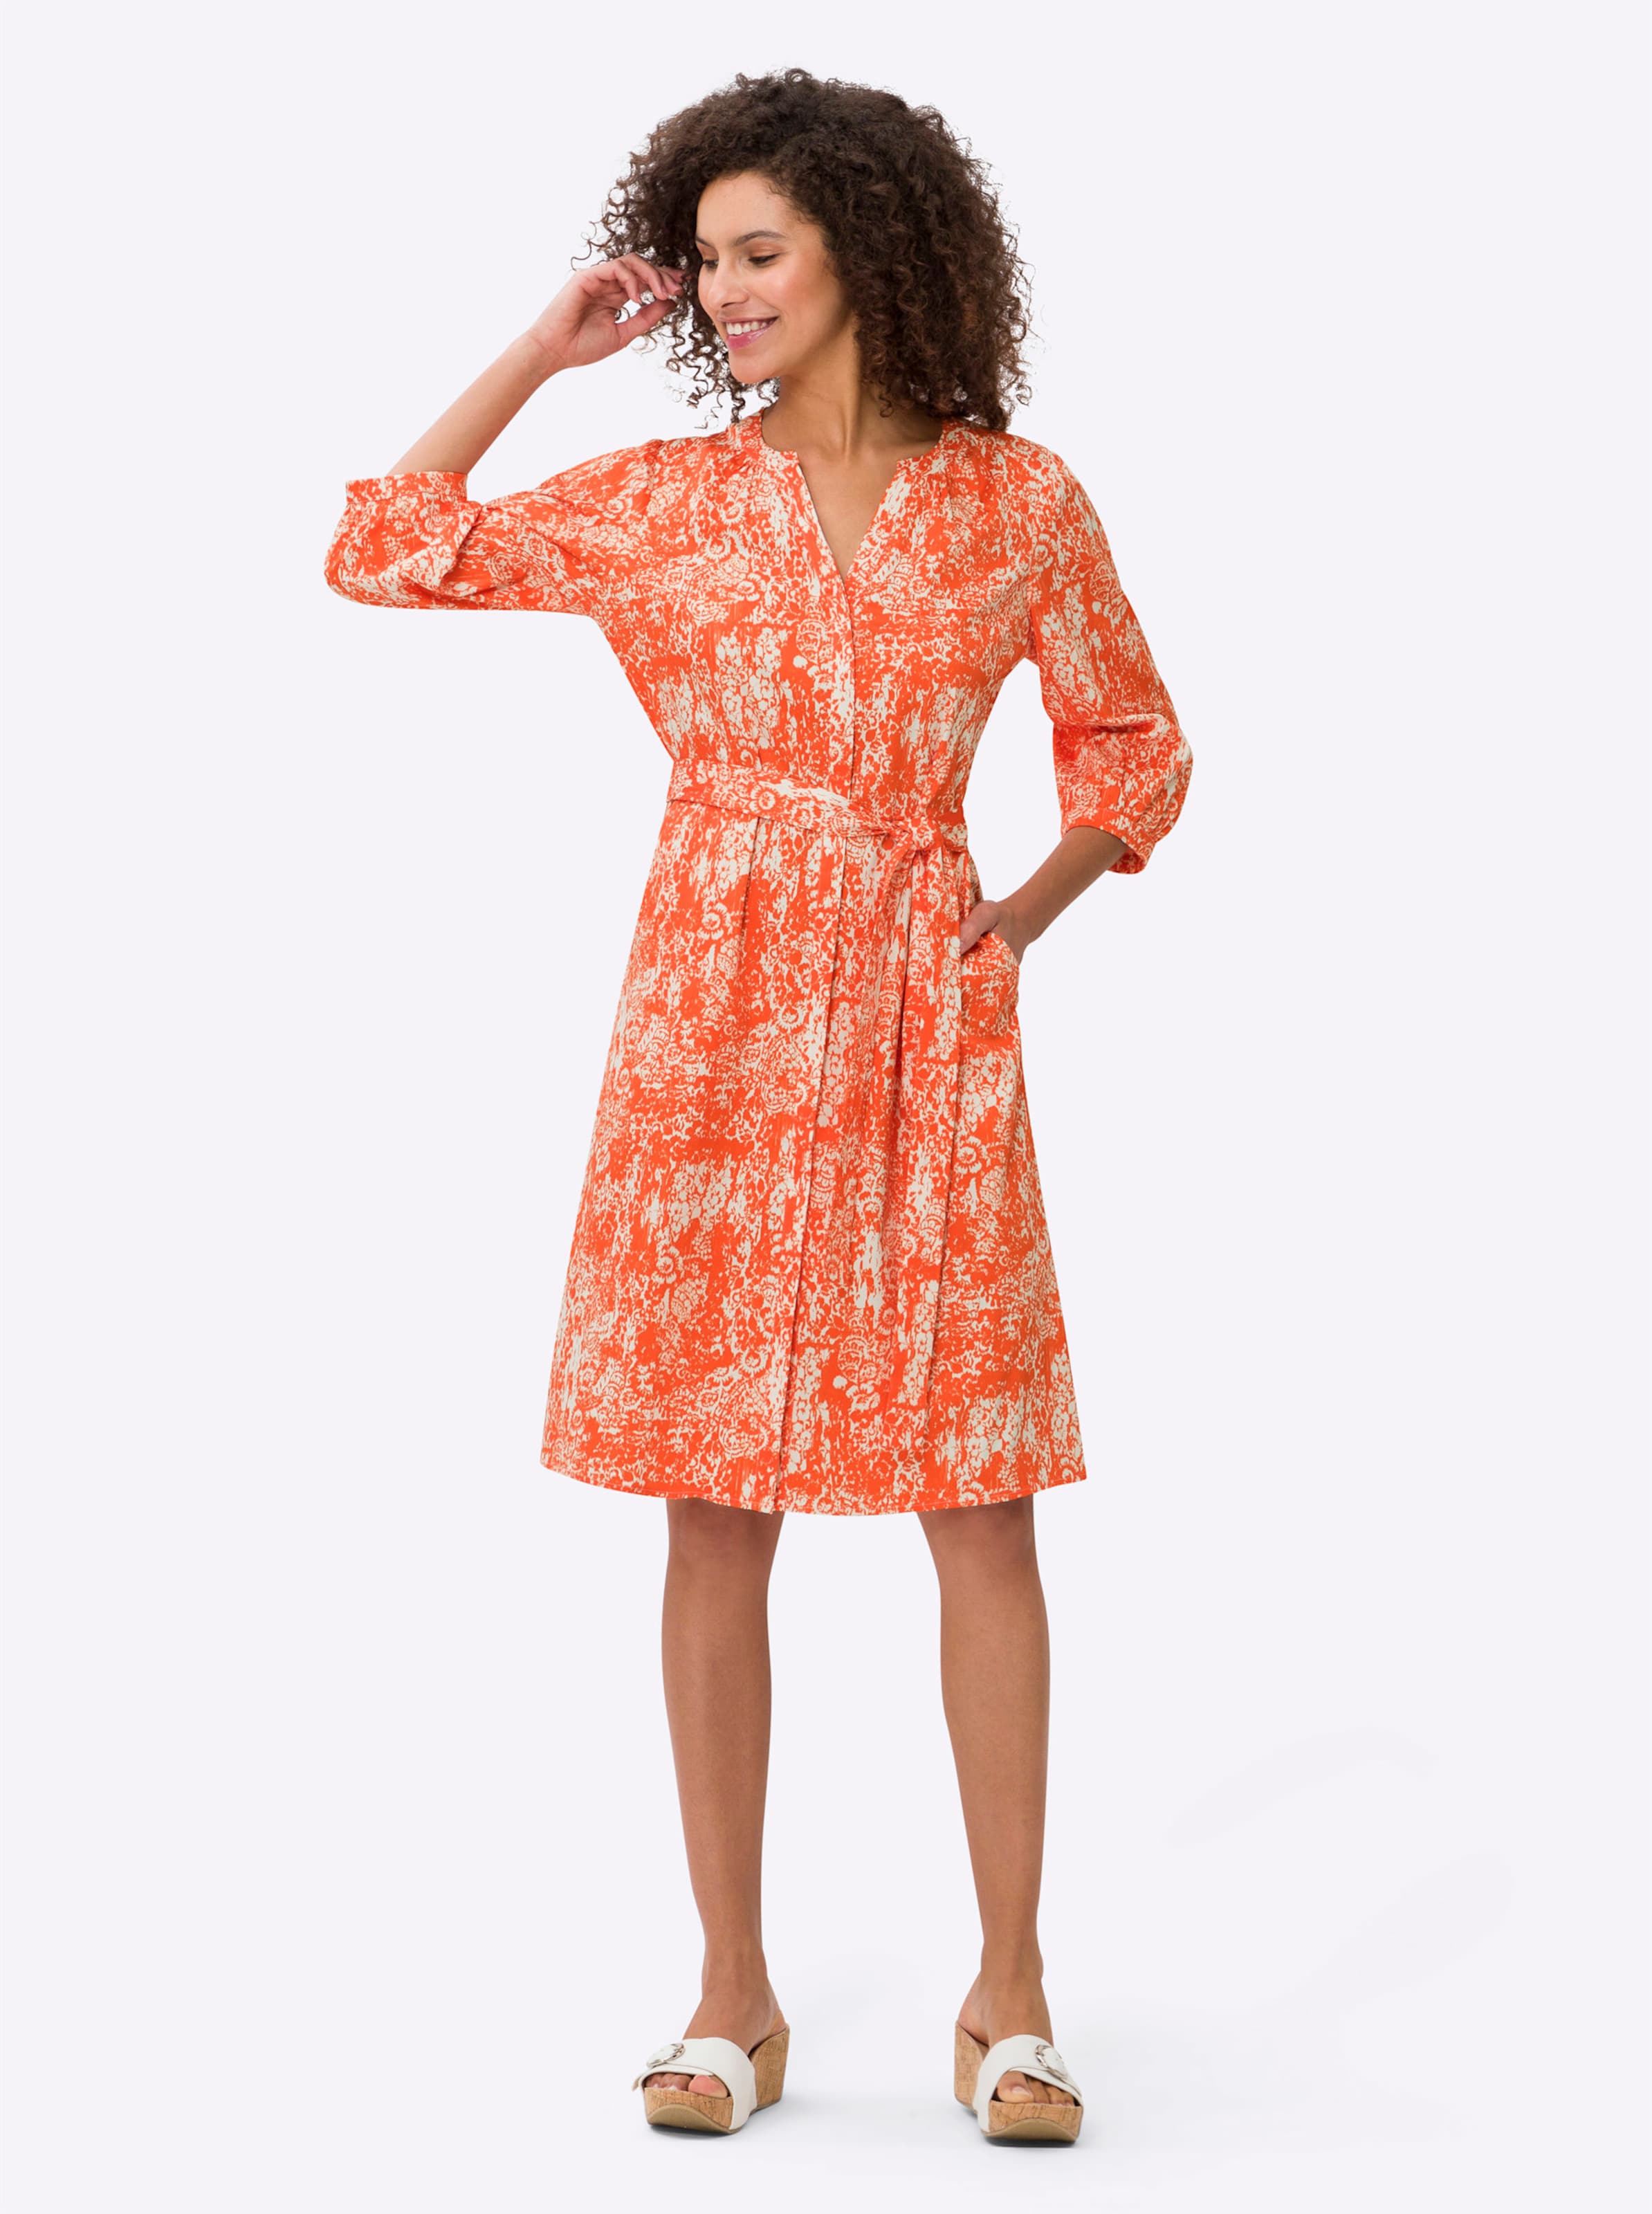 und eine günstig Kaufen-Druck-Kleid in orange-ecru-bedruckt von heine. Druck-Kleid in orange-ecru-bedruckt von heine <![CDATA[Druck-Kleid Blickfang in angenehm leichter Baumwoll-Elasthan-Qualität mit modernem Print-Dessin. Rundhals-Ausschnitt mit offenem V und durchgehender ver